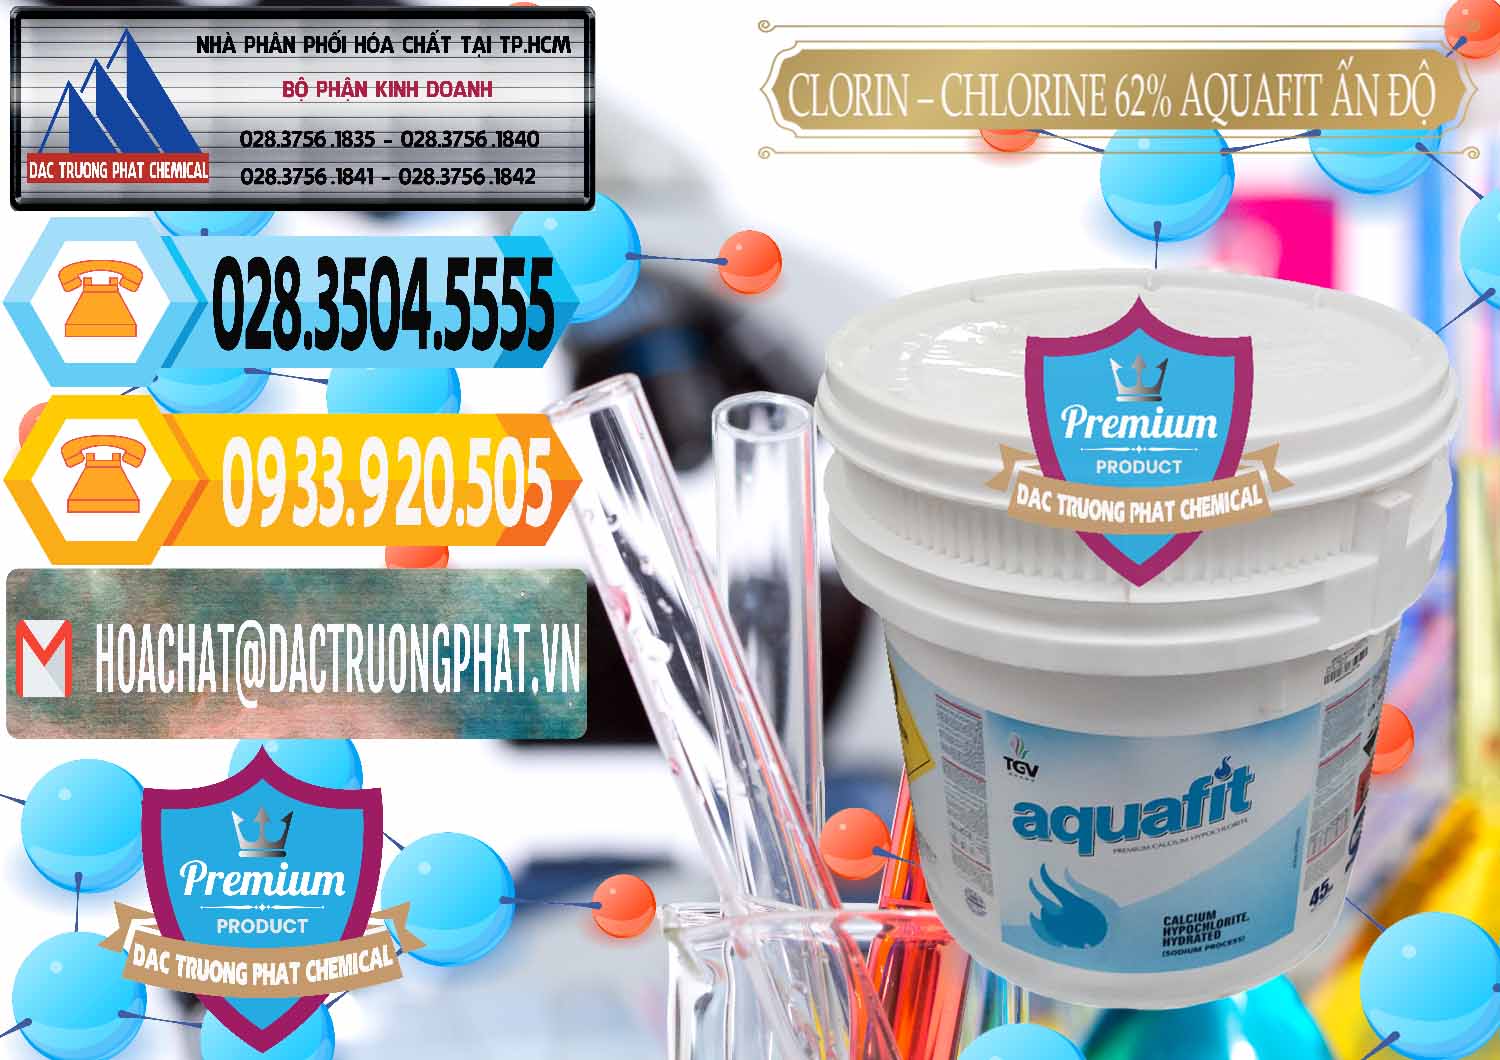 Cty chuyên phân phối & bán Clorin - Chlorine 62% Aquafit Thùng Lùn Ấn Độ India - 0057 - Chuyên cung ứng _ phân phối hóa chất tại TP.HCM - hoachattayrua.net